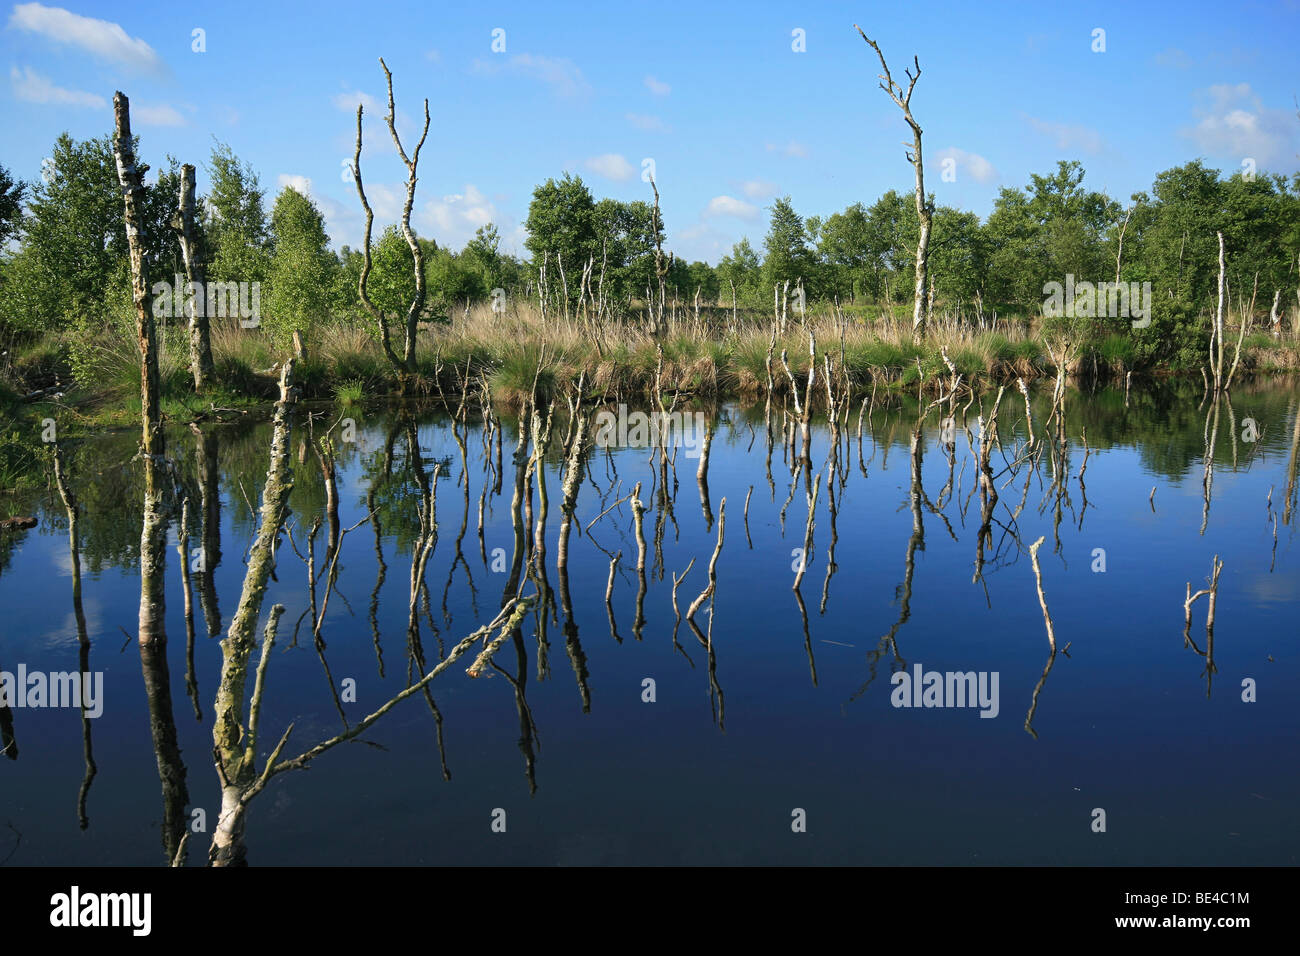 Restoration of Wetlands, former peat cutting site, Hagener Koenigsmoor wetlands, Hagen, district of Cuxhaven, Lower Saxony, Ger Stock Photo